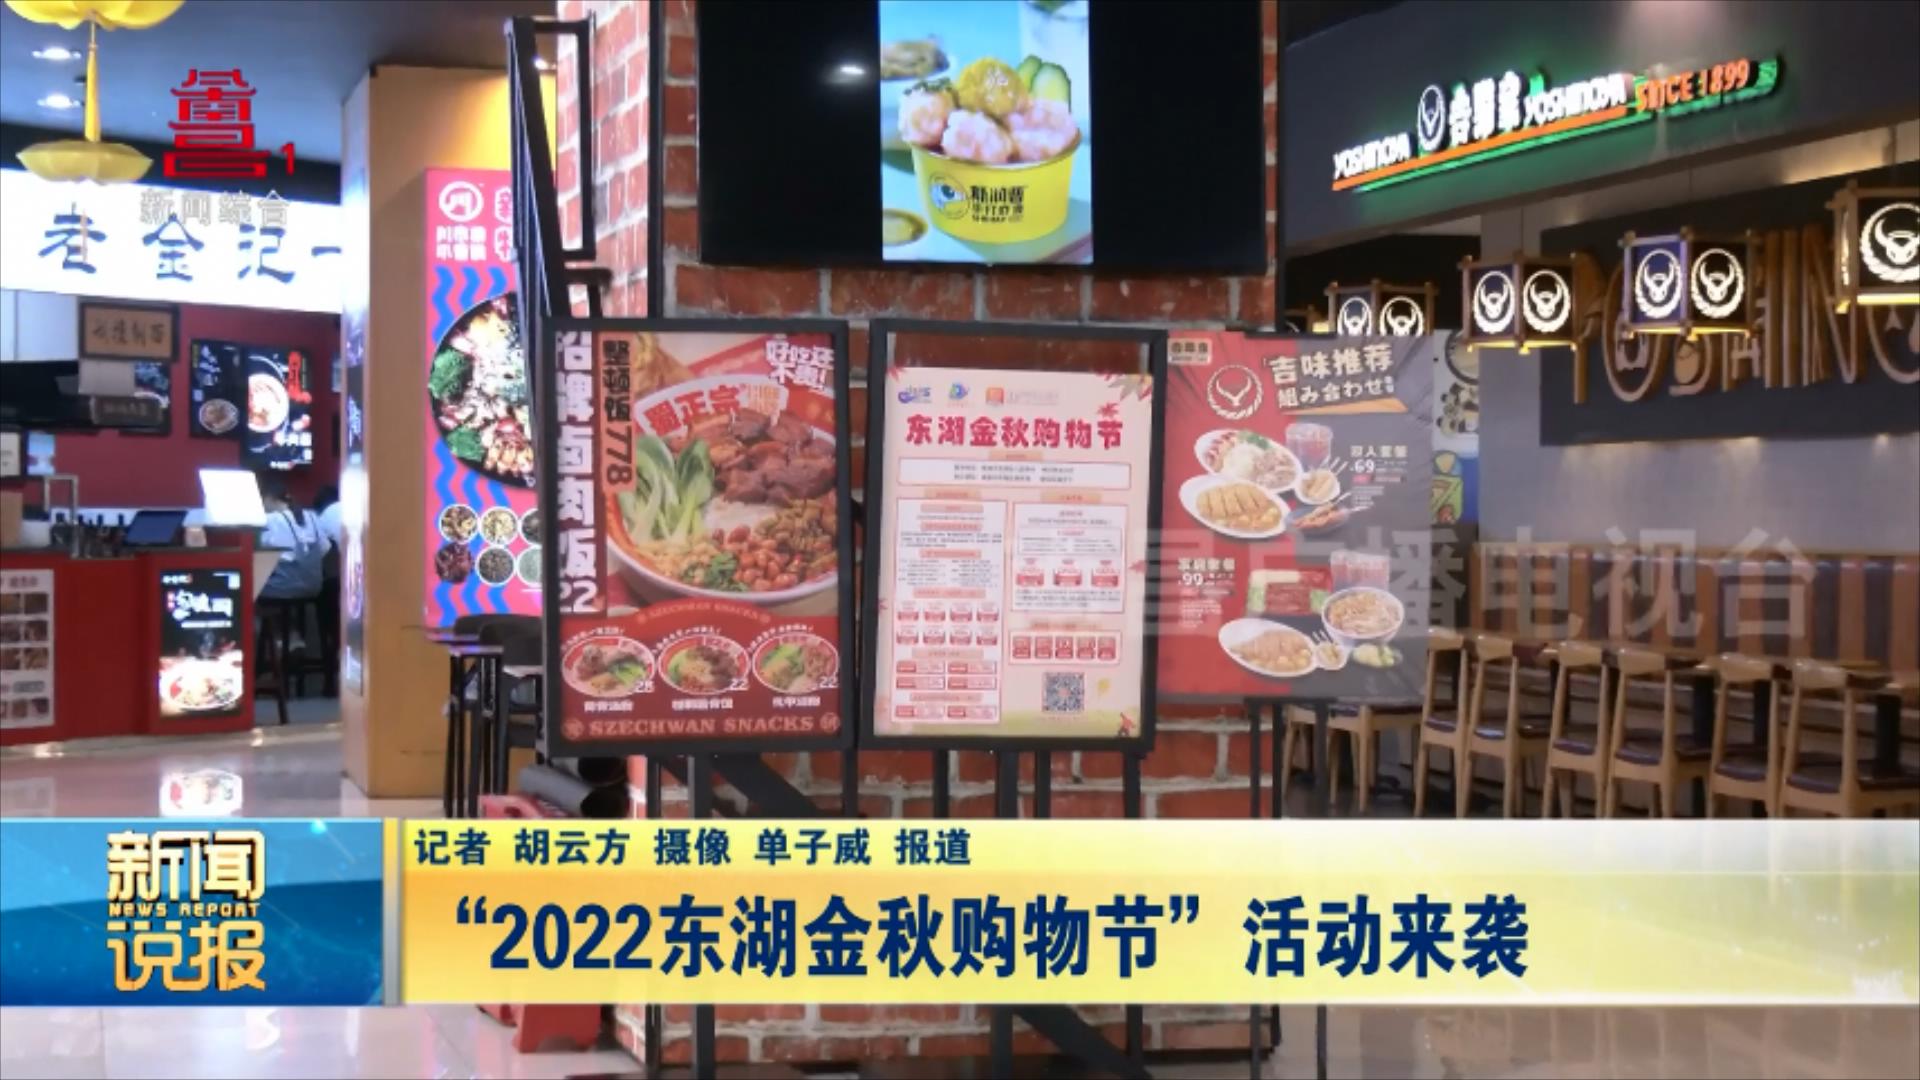 “2022东湖金秋购物节”活动来袭